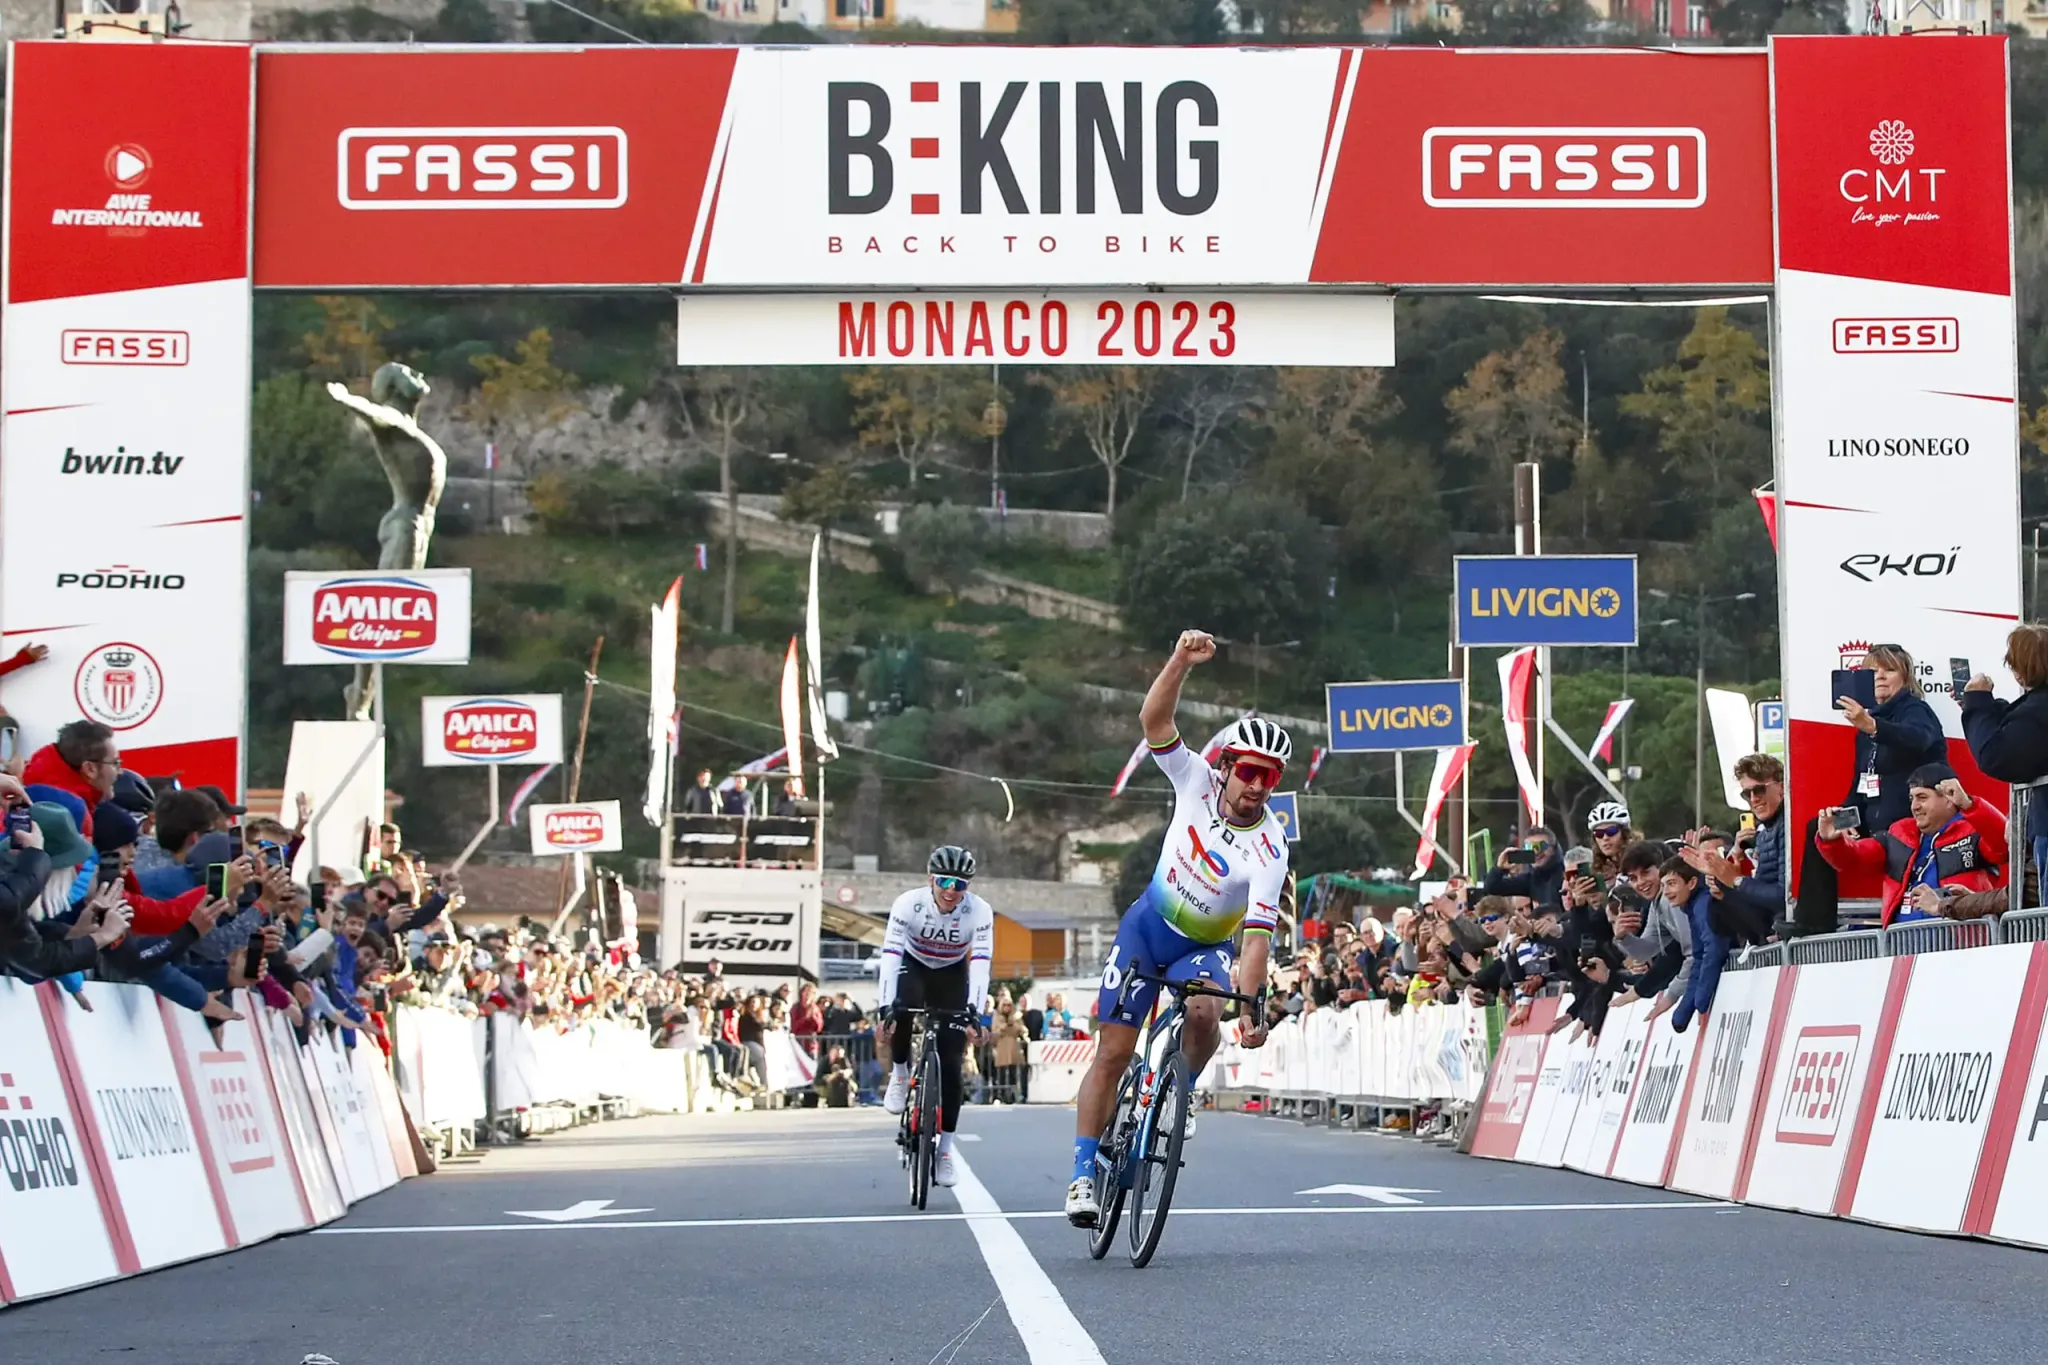 Es mejor pedalear sentado como Miguel Indurain o de pie como Alberto  Contador?  Diario del Triatlón: Noticias sobre Running, Ciclismo, Natación  y Entrenamiento